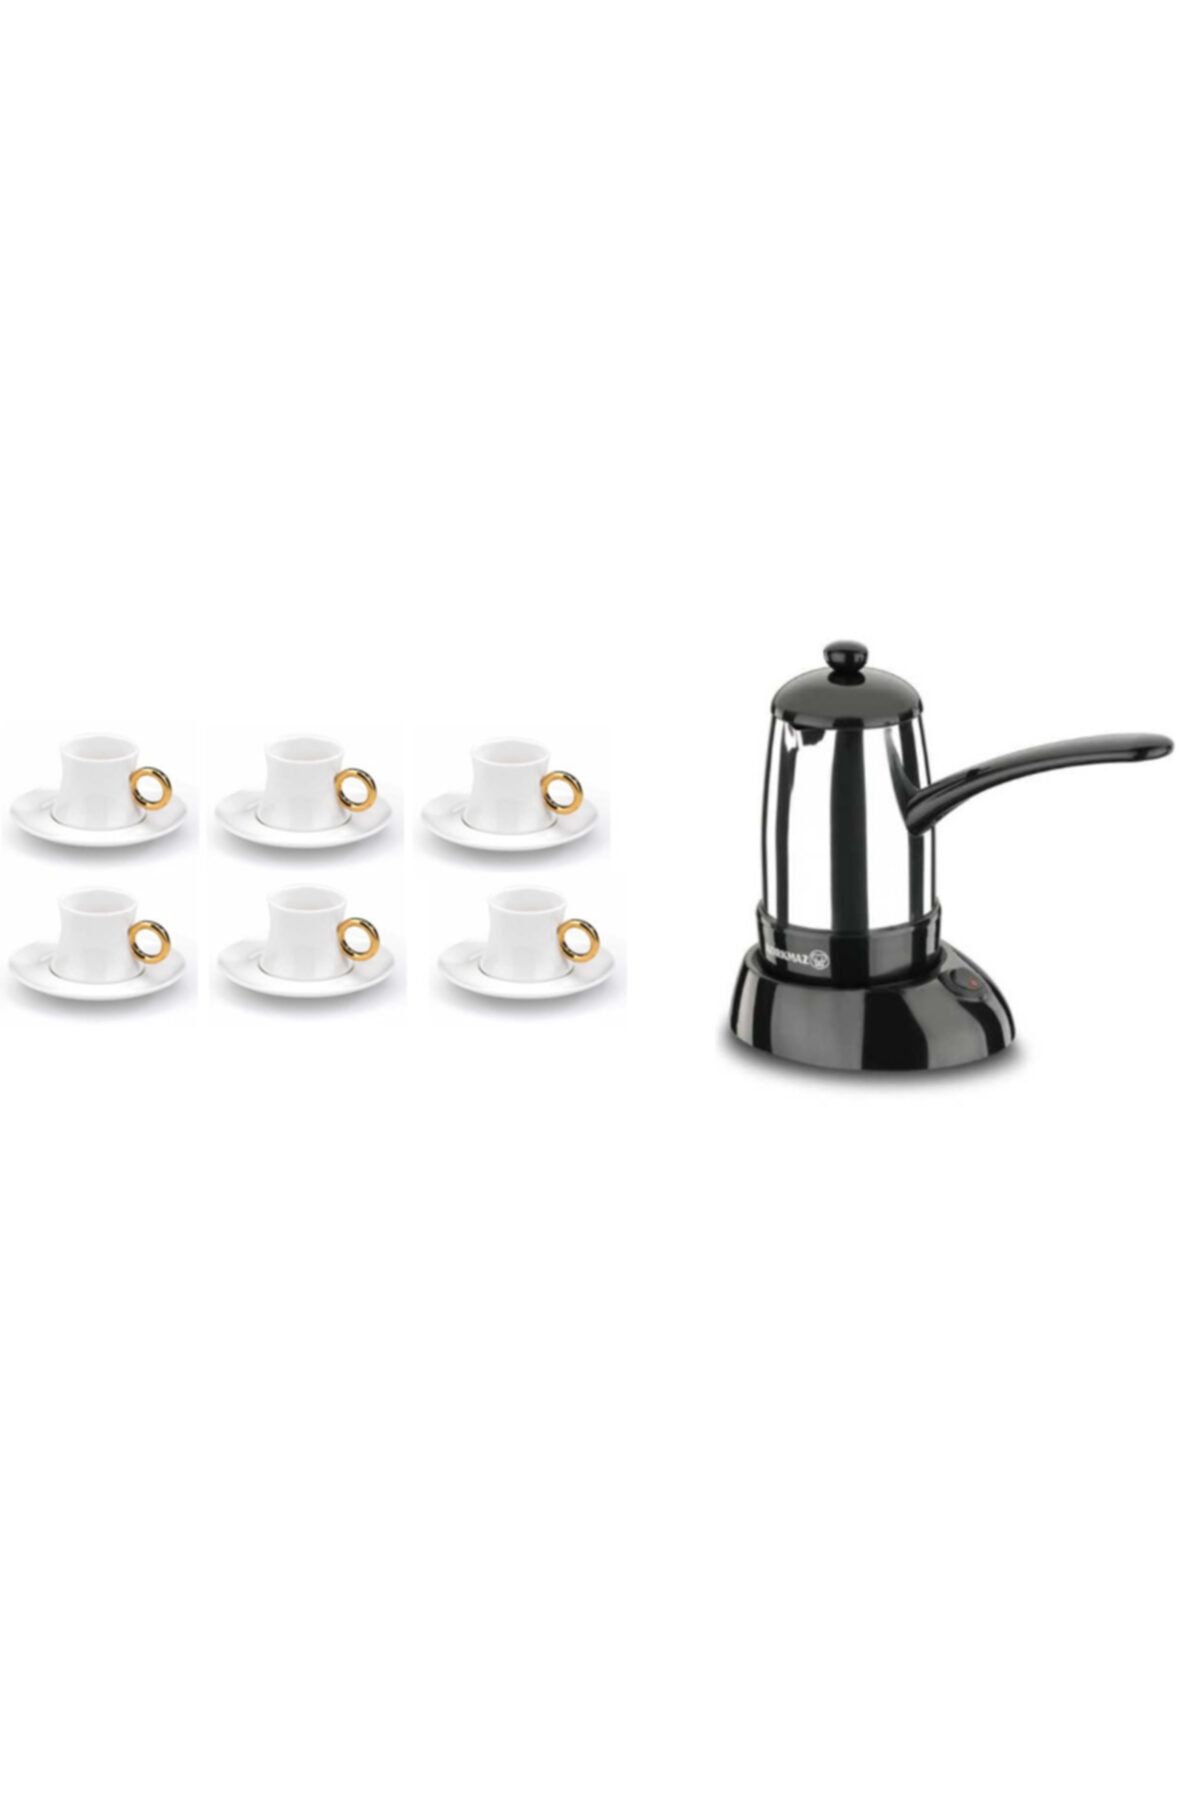 KORKMAZ Smart Elektrikli Kahve Makinası+ 6 Kişilik Kahve Fincan Takımı